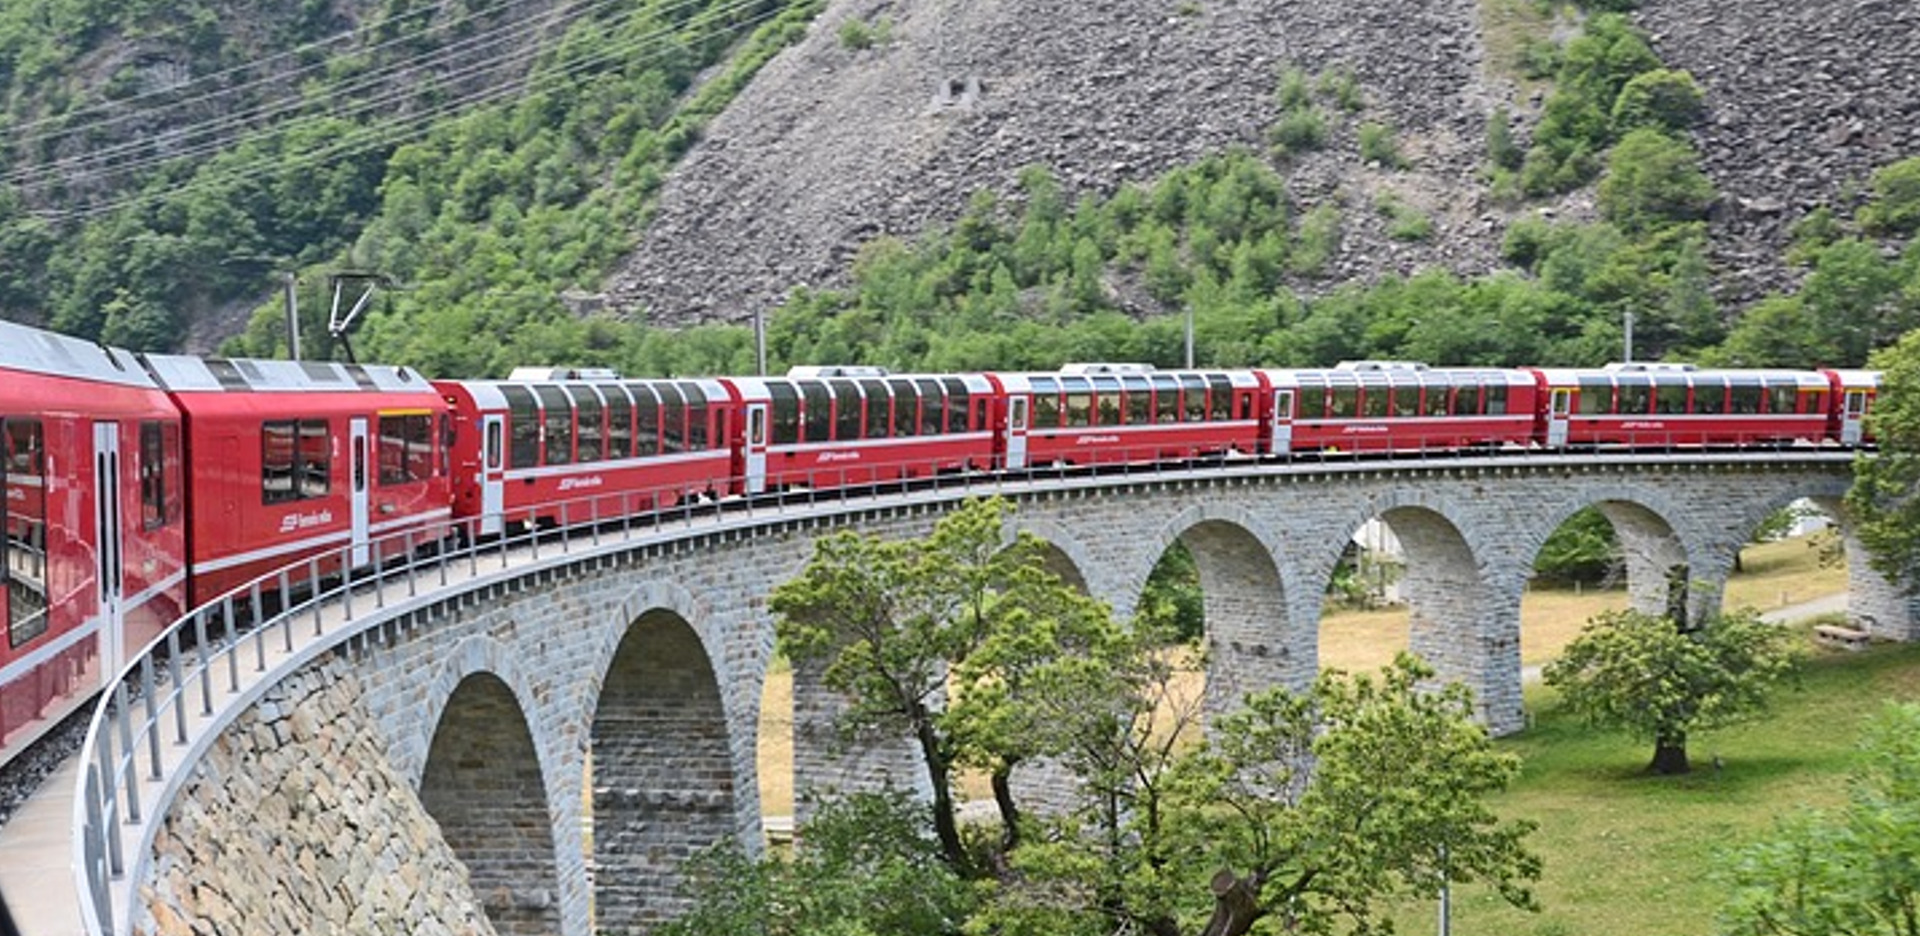  Viaggio sul trenino rosso del Bernina